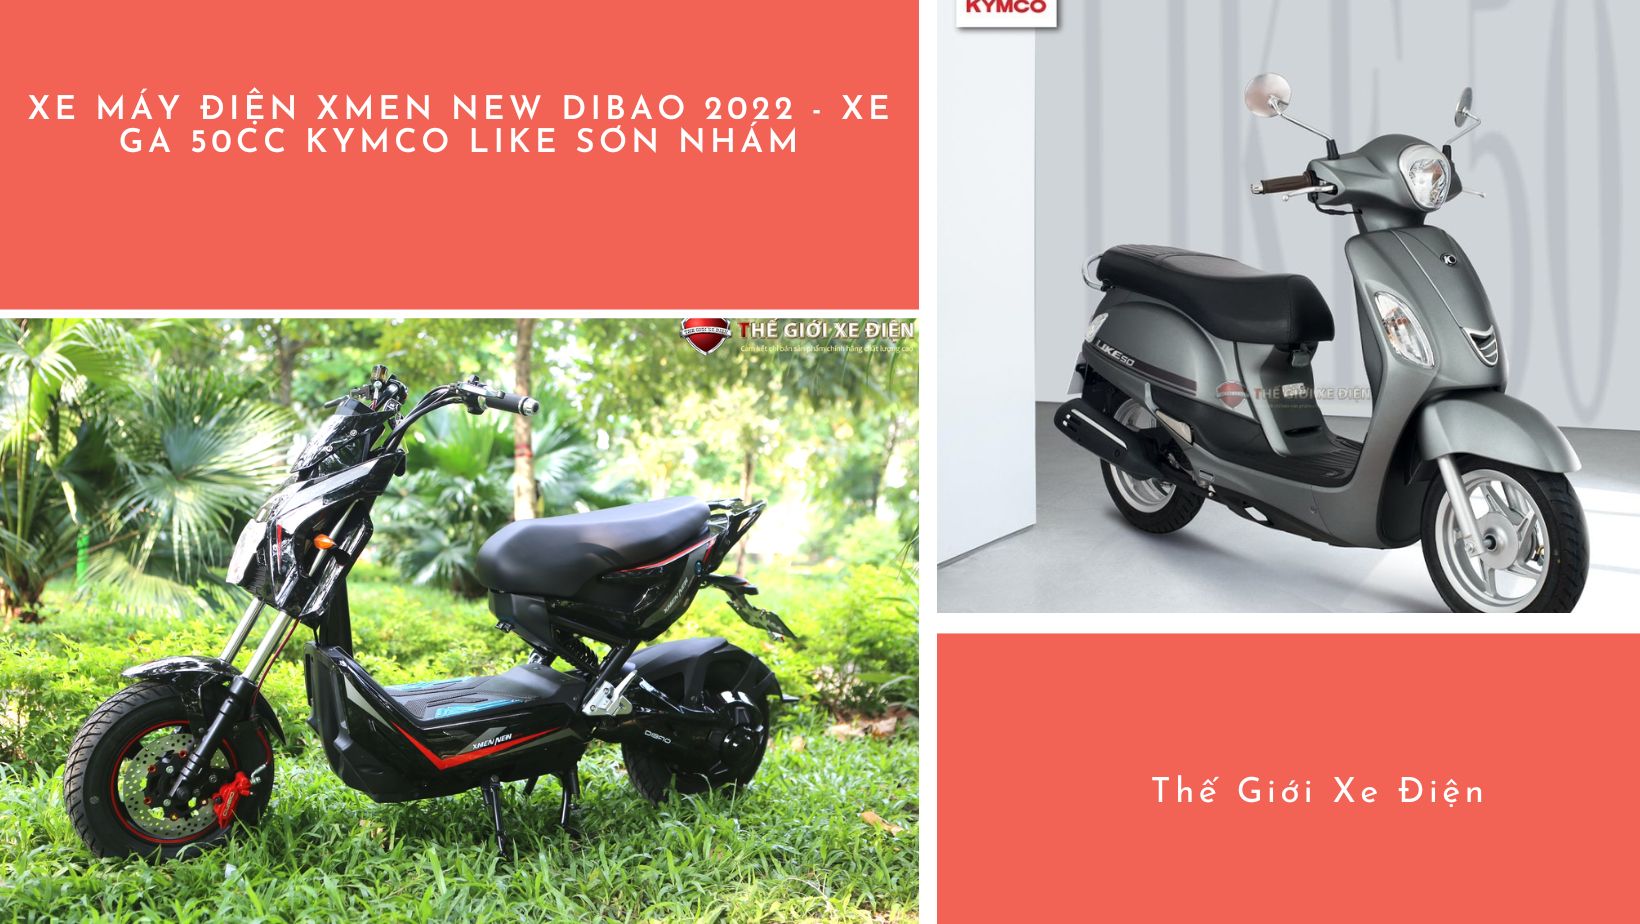 xe máy điện Xmen New Dibao 2022 và xe ga 50cc KYMCO Like sơn nhám 